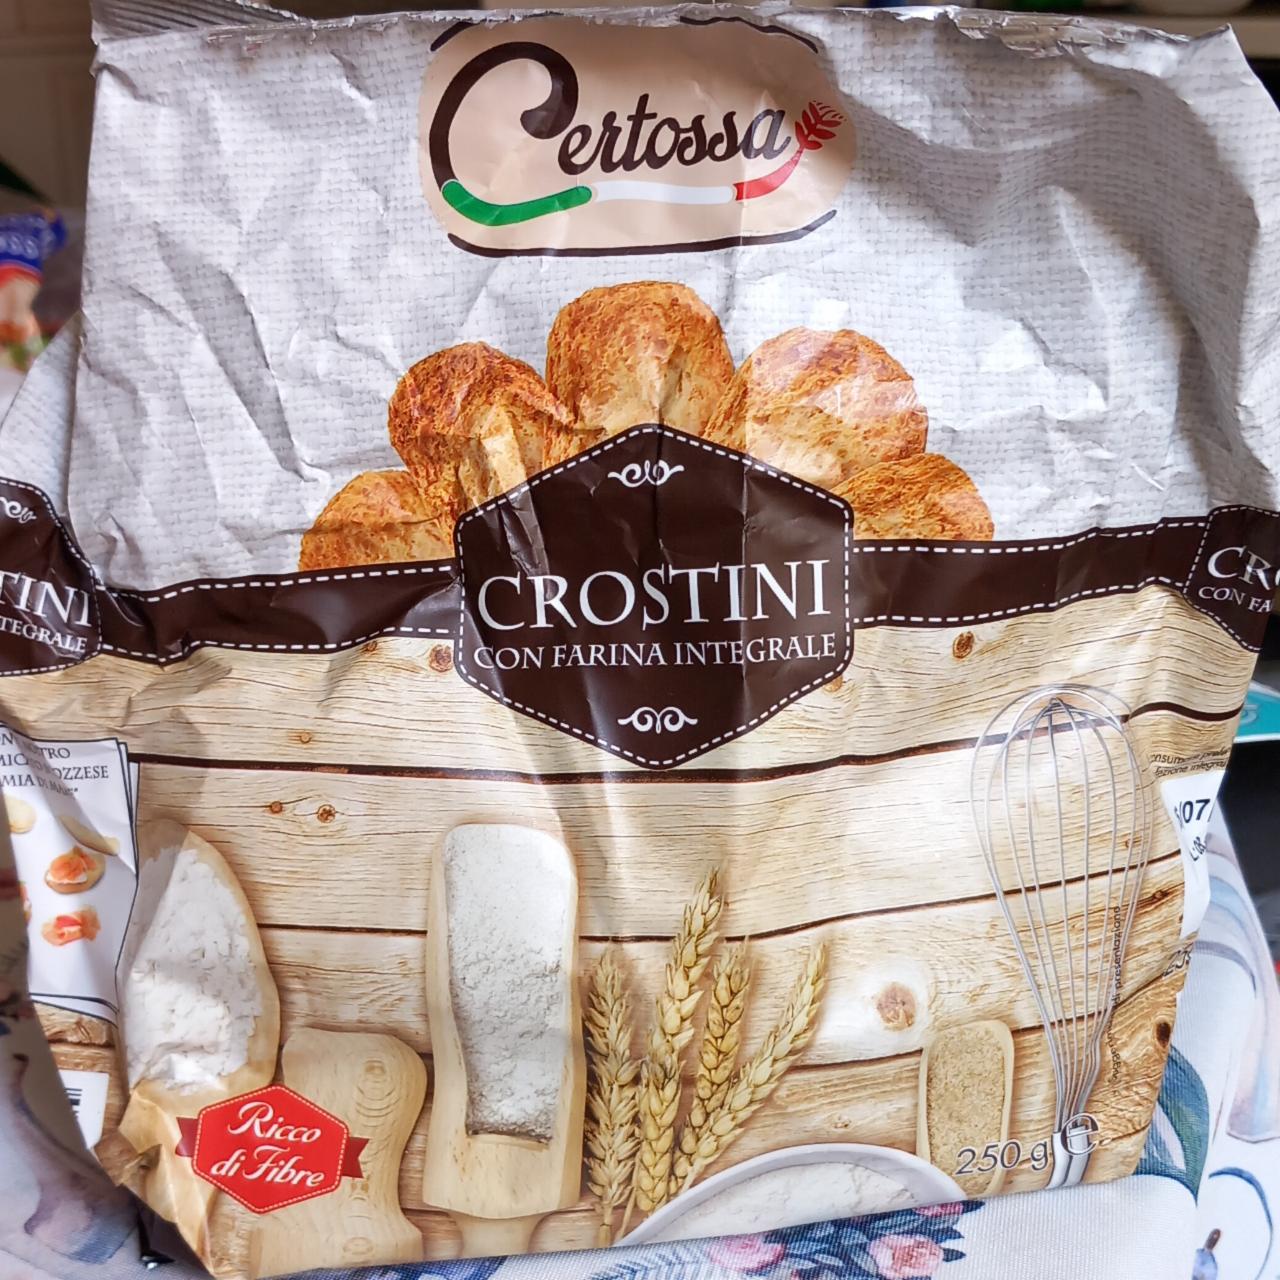 Фото - гренки из цельнозерновой муки Crostini con farina integrale Certossa